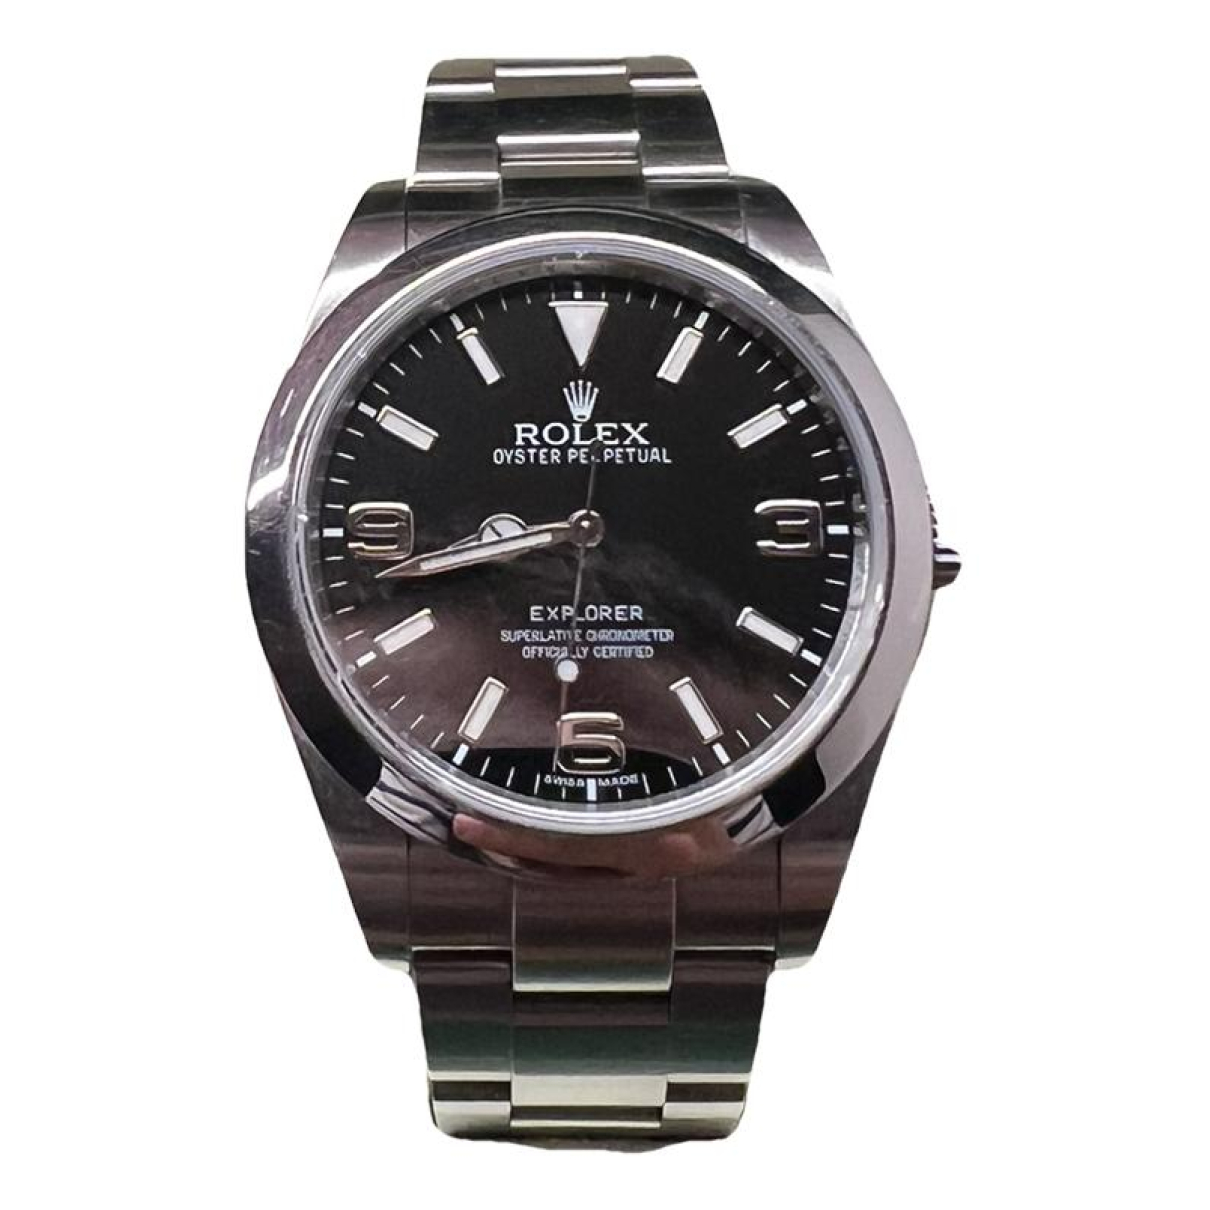 image of Rolex Explorer watch